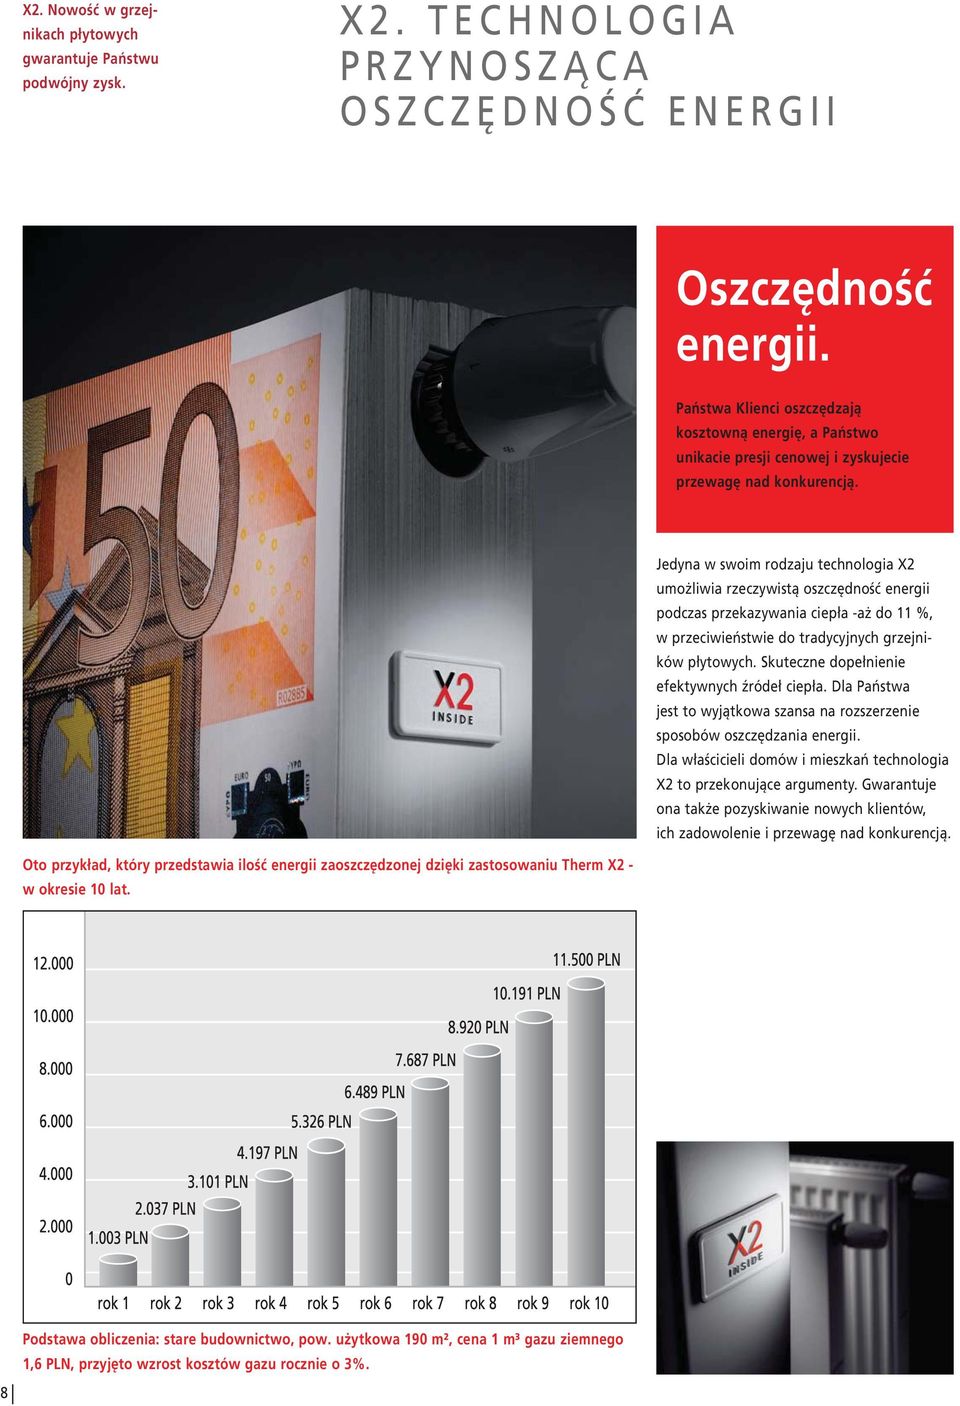 Jedyna w swoim rodzaju technologia X2 umożliwia rzeczywistą oszczędność energii podczas przekazywania ciepła -aż do 11 %, w przeciwieństwie do tradycyjnych grzejników płytowych.